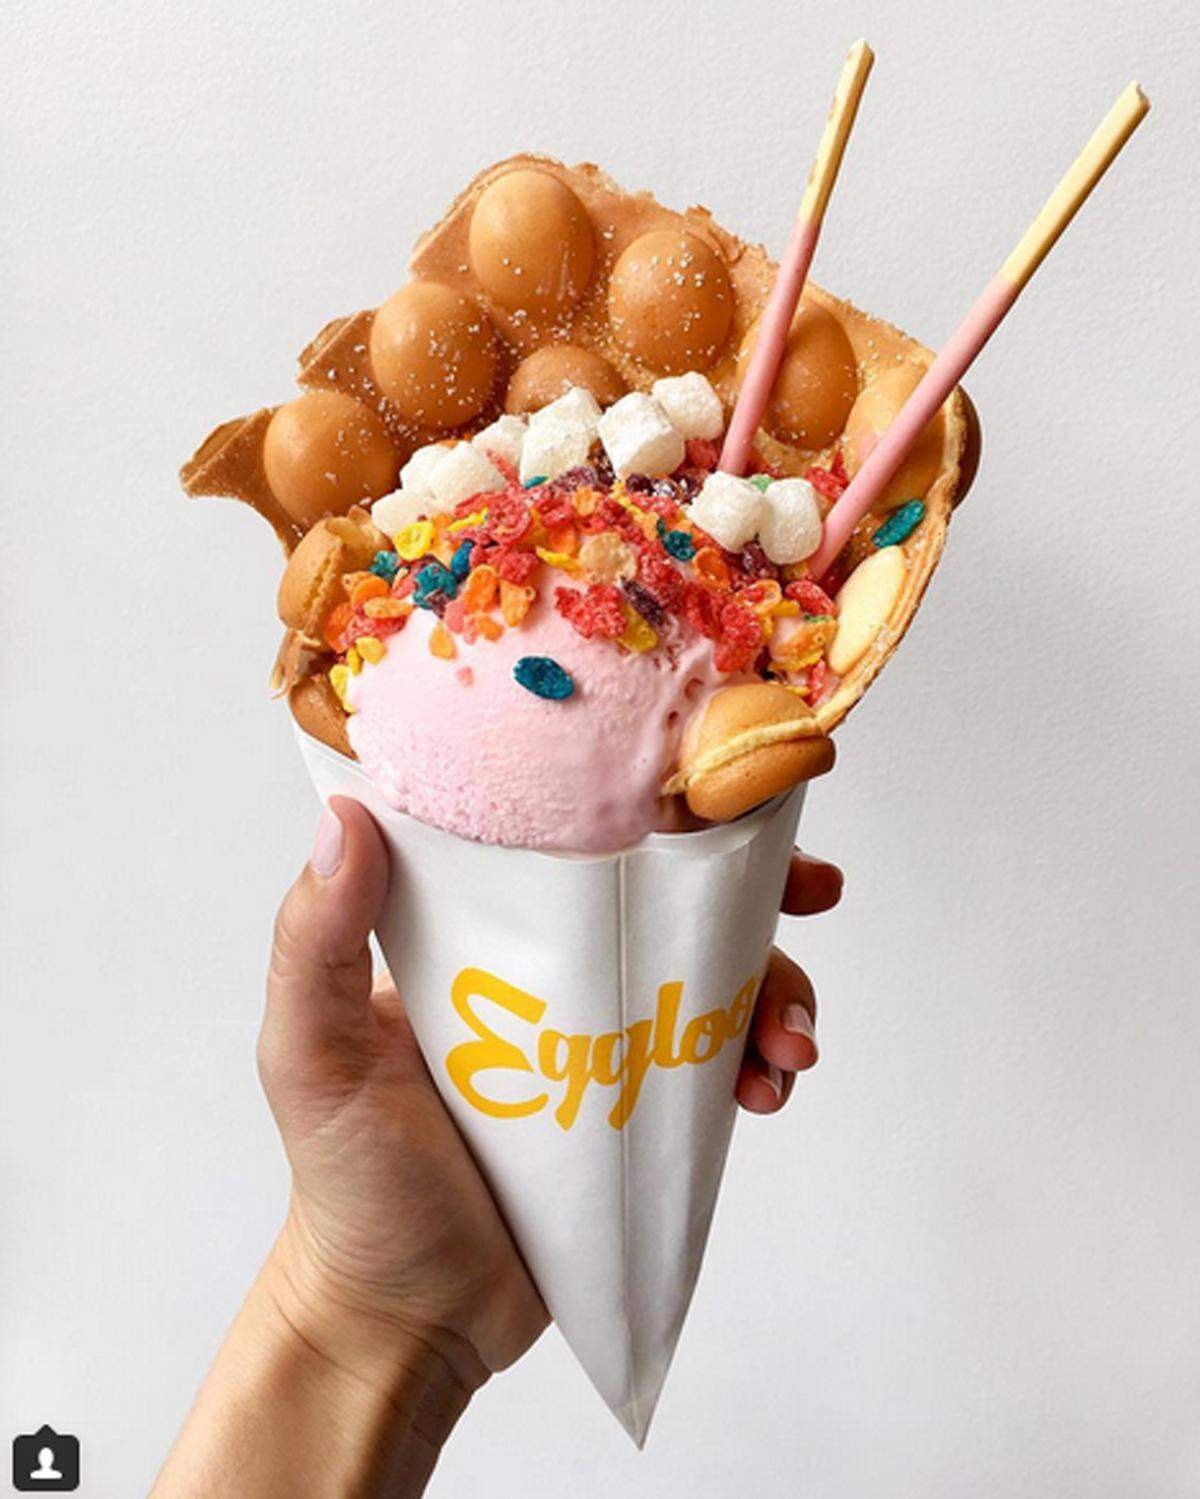 Im Web verbreiten sich auch die Bilder dieser Hybrid-Süßspeise rasend. Die Eisdiele Eggloo serviert in New York Eis in einer Waffel aus Schokolade oder Matcha-Teig. Bunte Toppings machen es besonders fotogen.